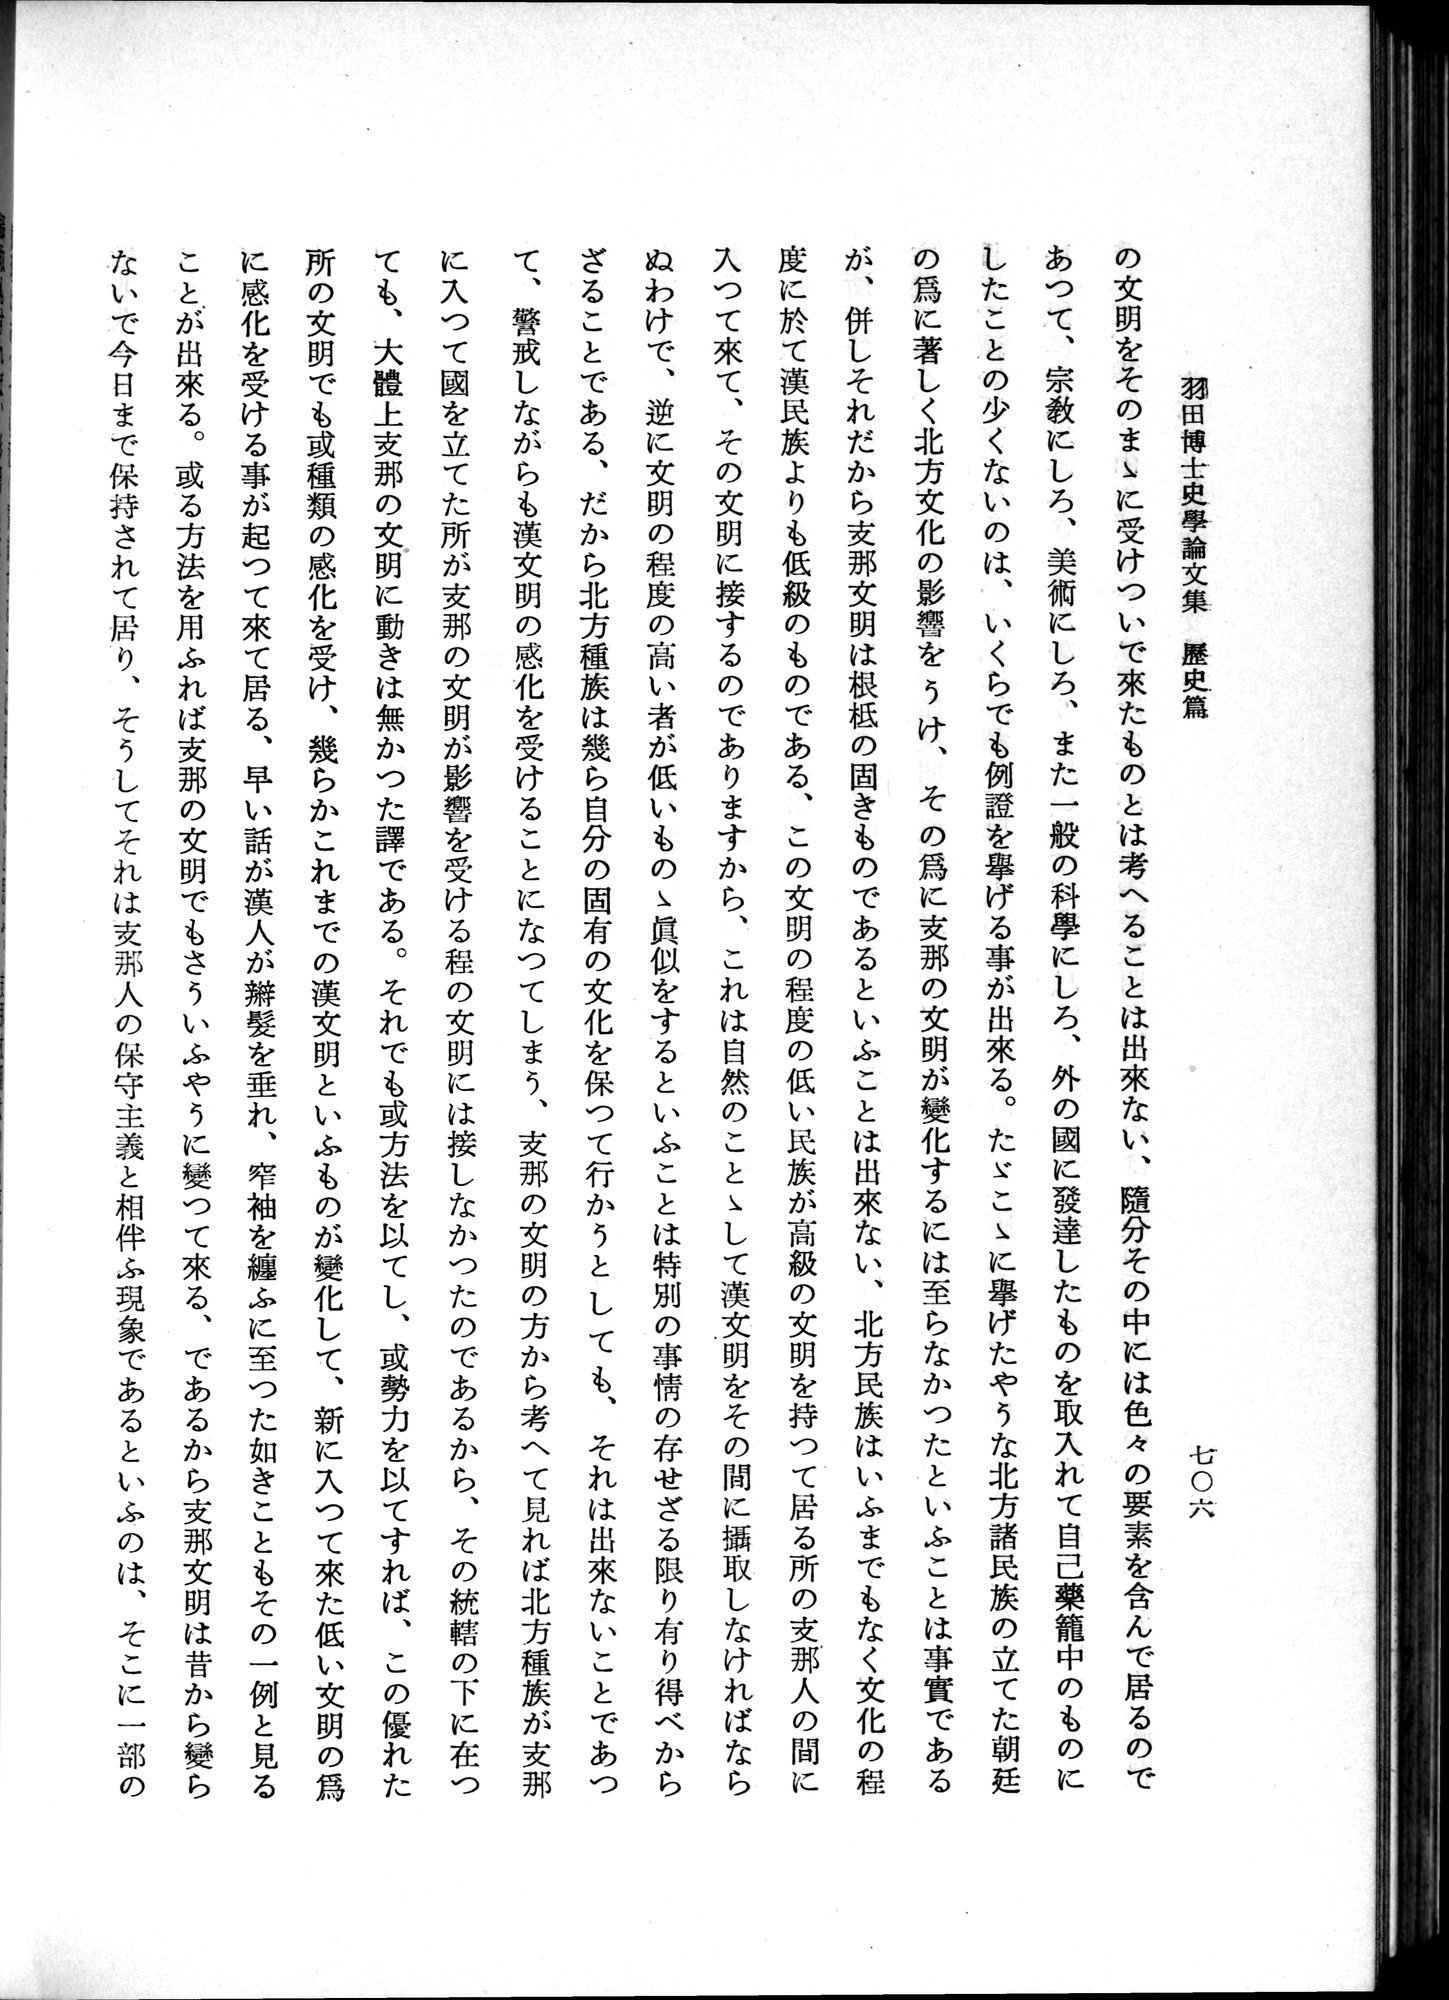 羽田博士史学論文集 : vol.1 / Page 744 (Grayscale High Resolution Image)